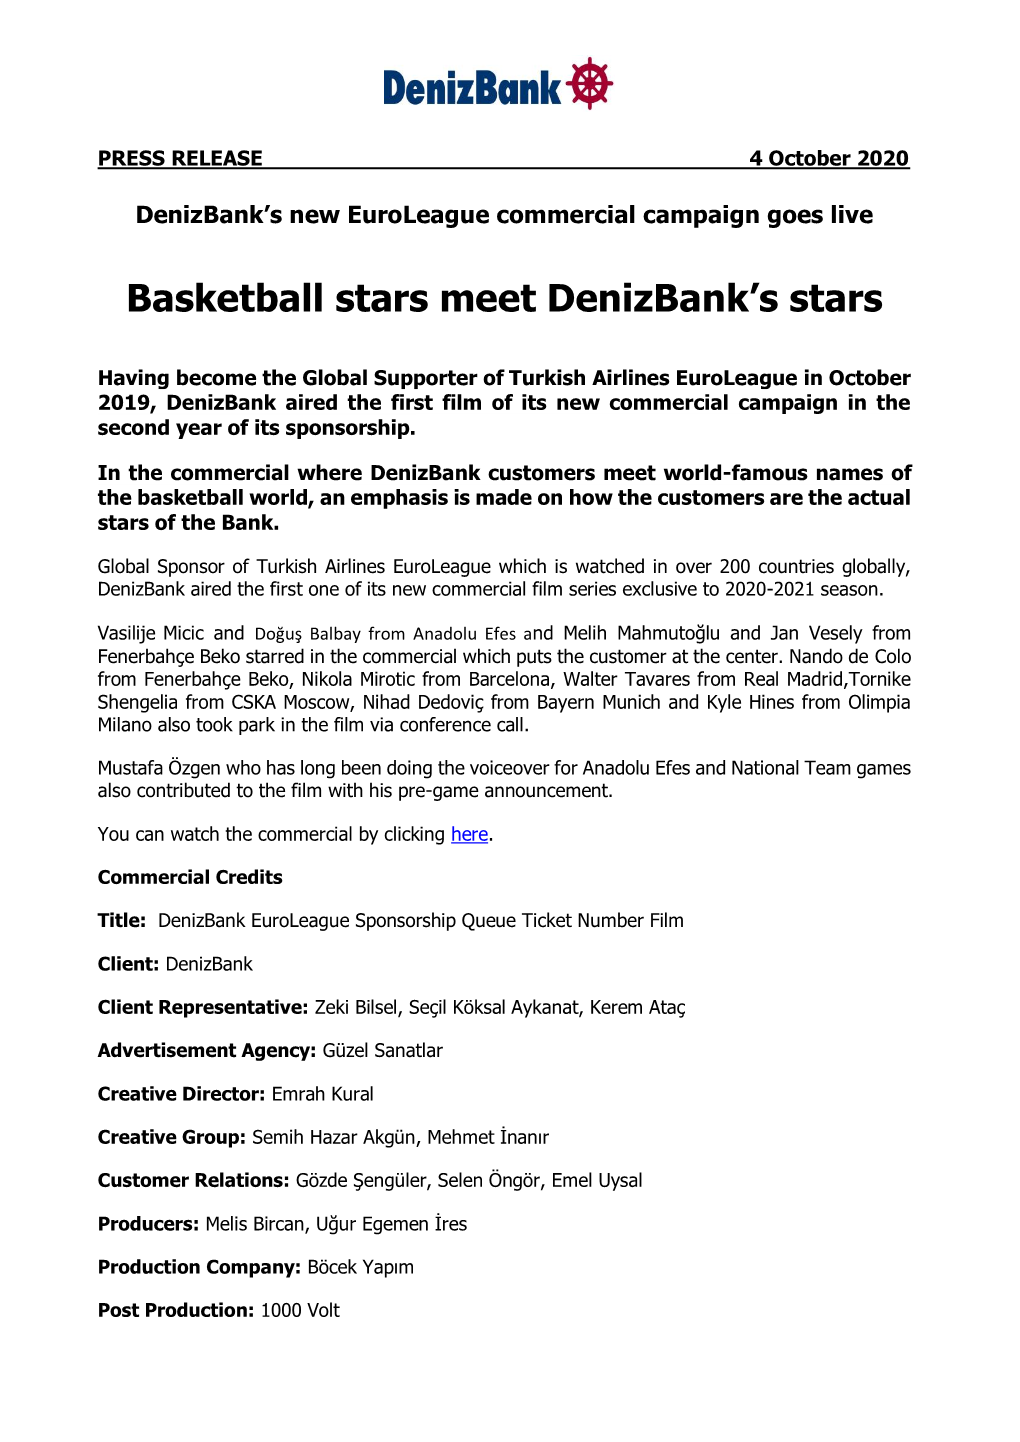 Basketball Stars Meet Denizbank's Stars